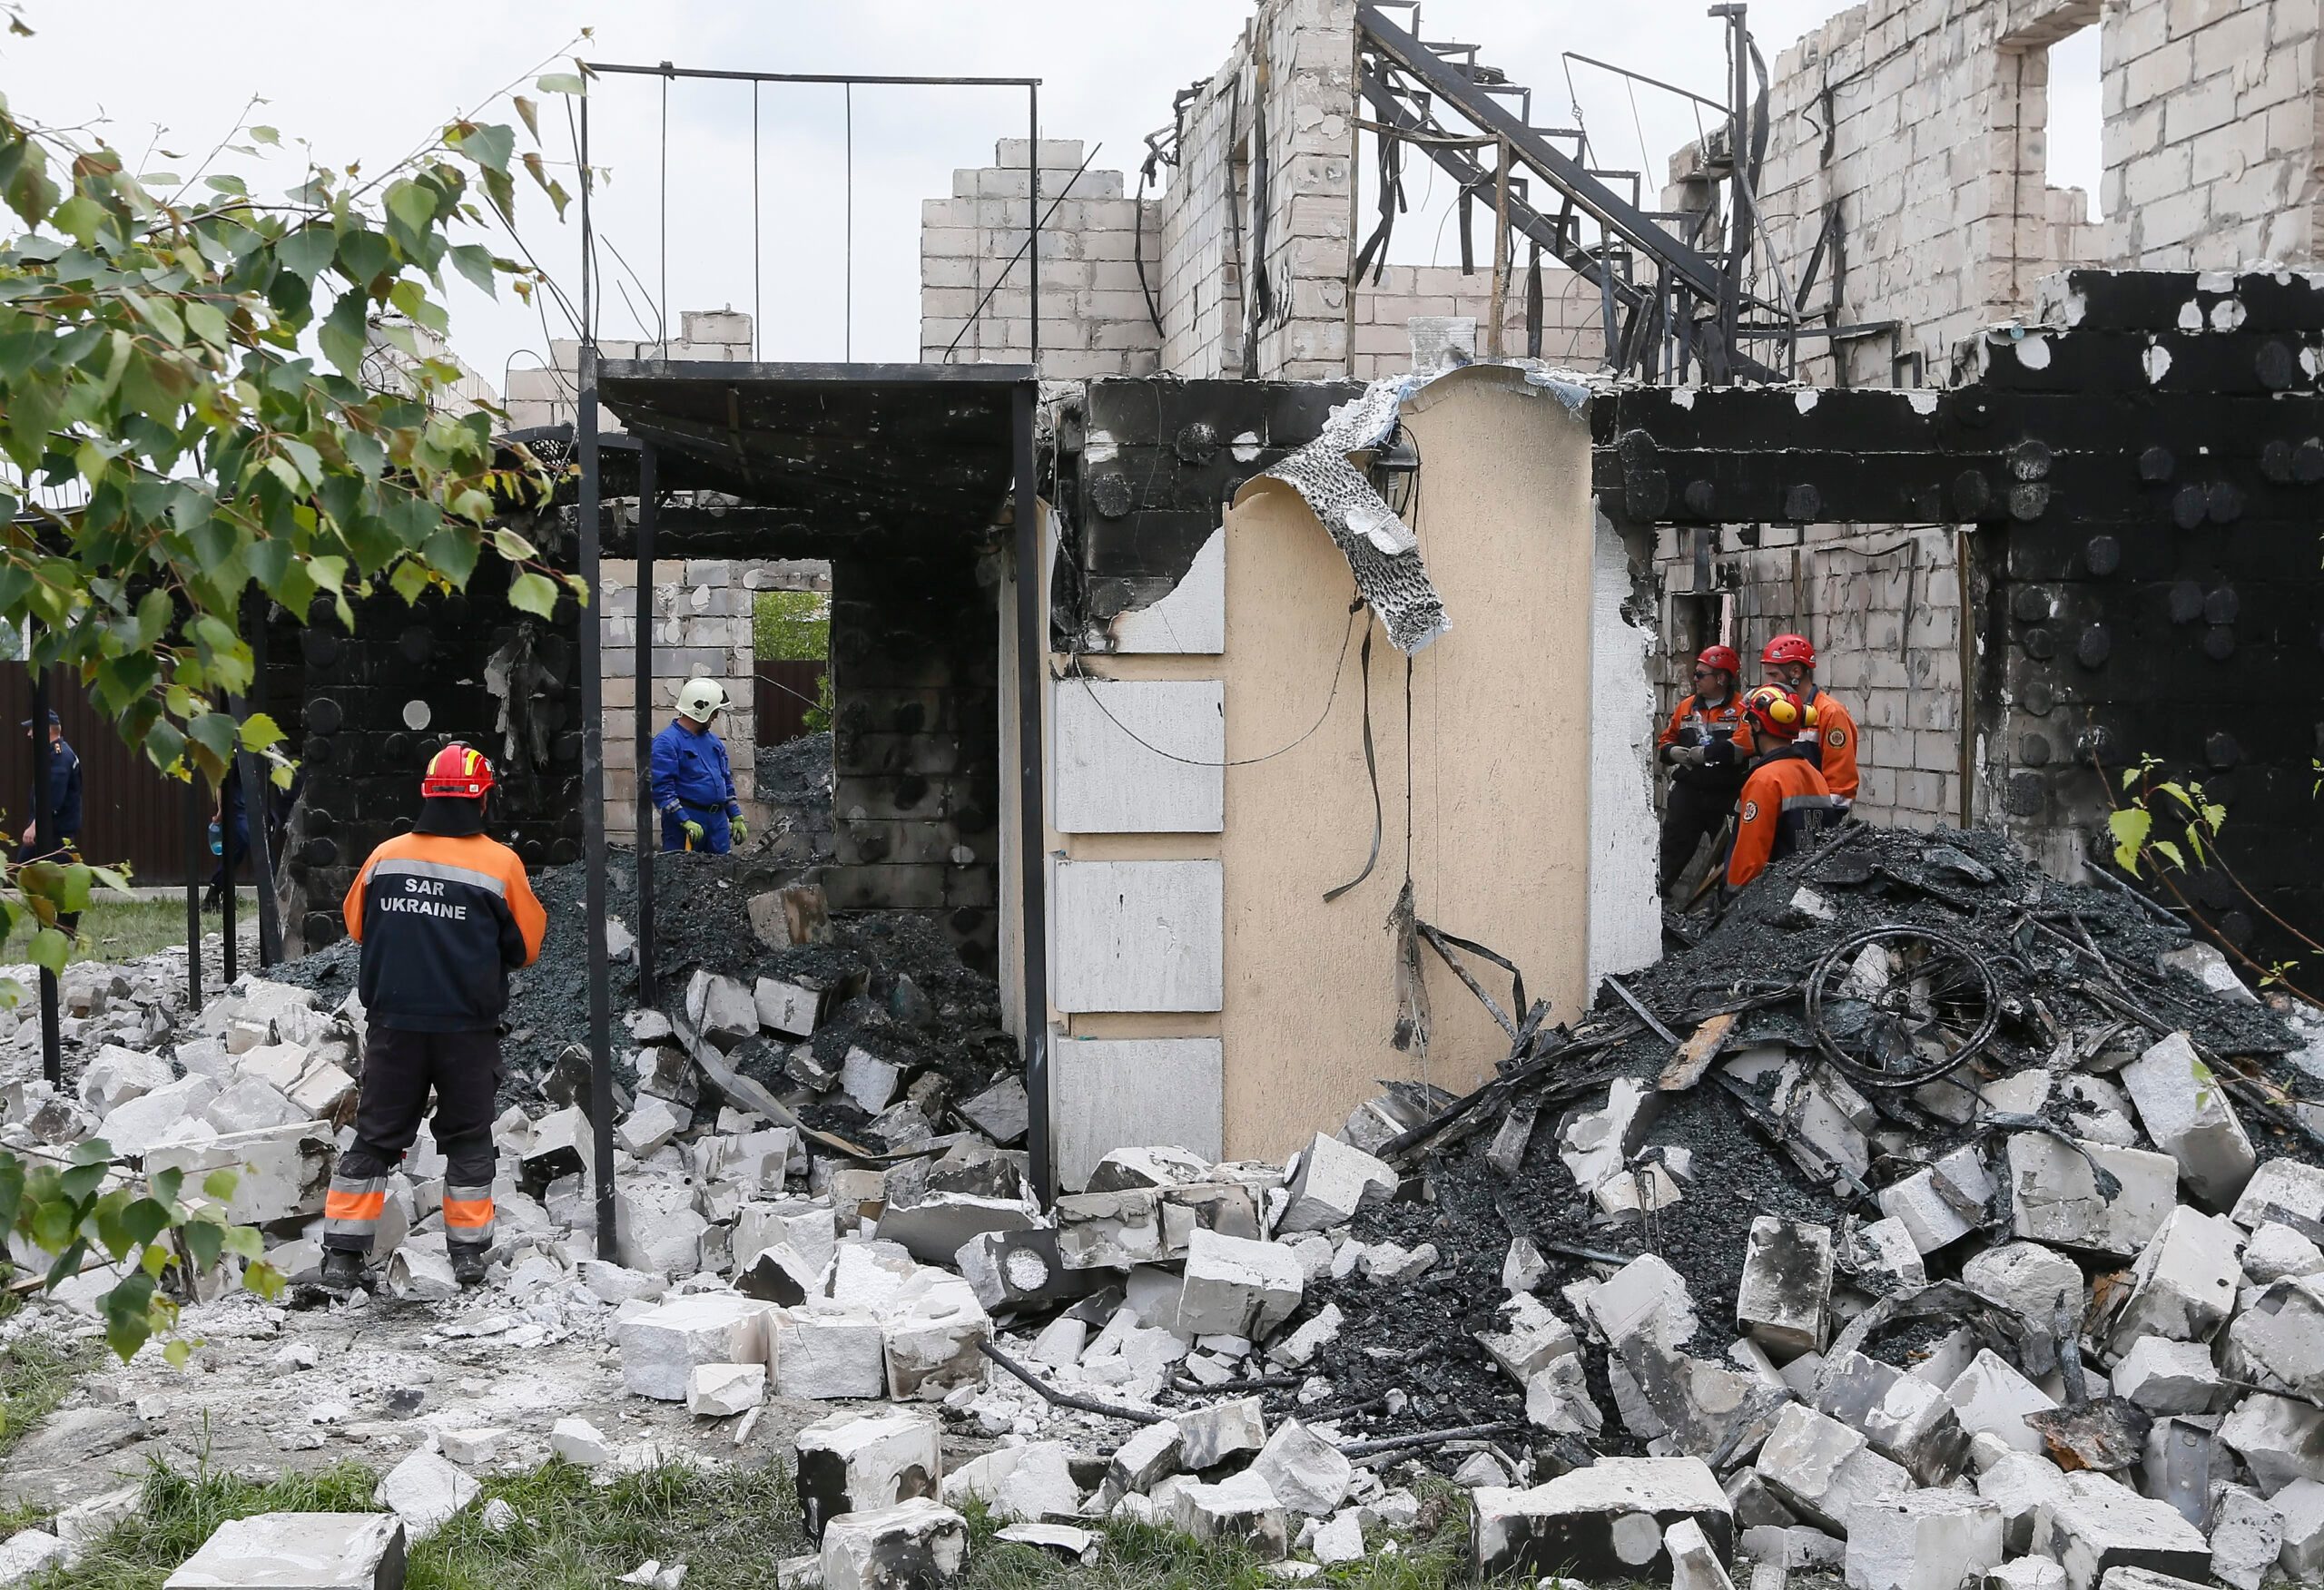 17 die in fire at Ukraine home for elderly